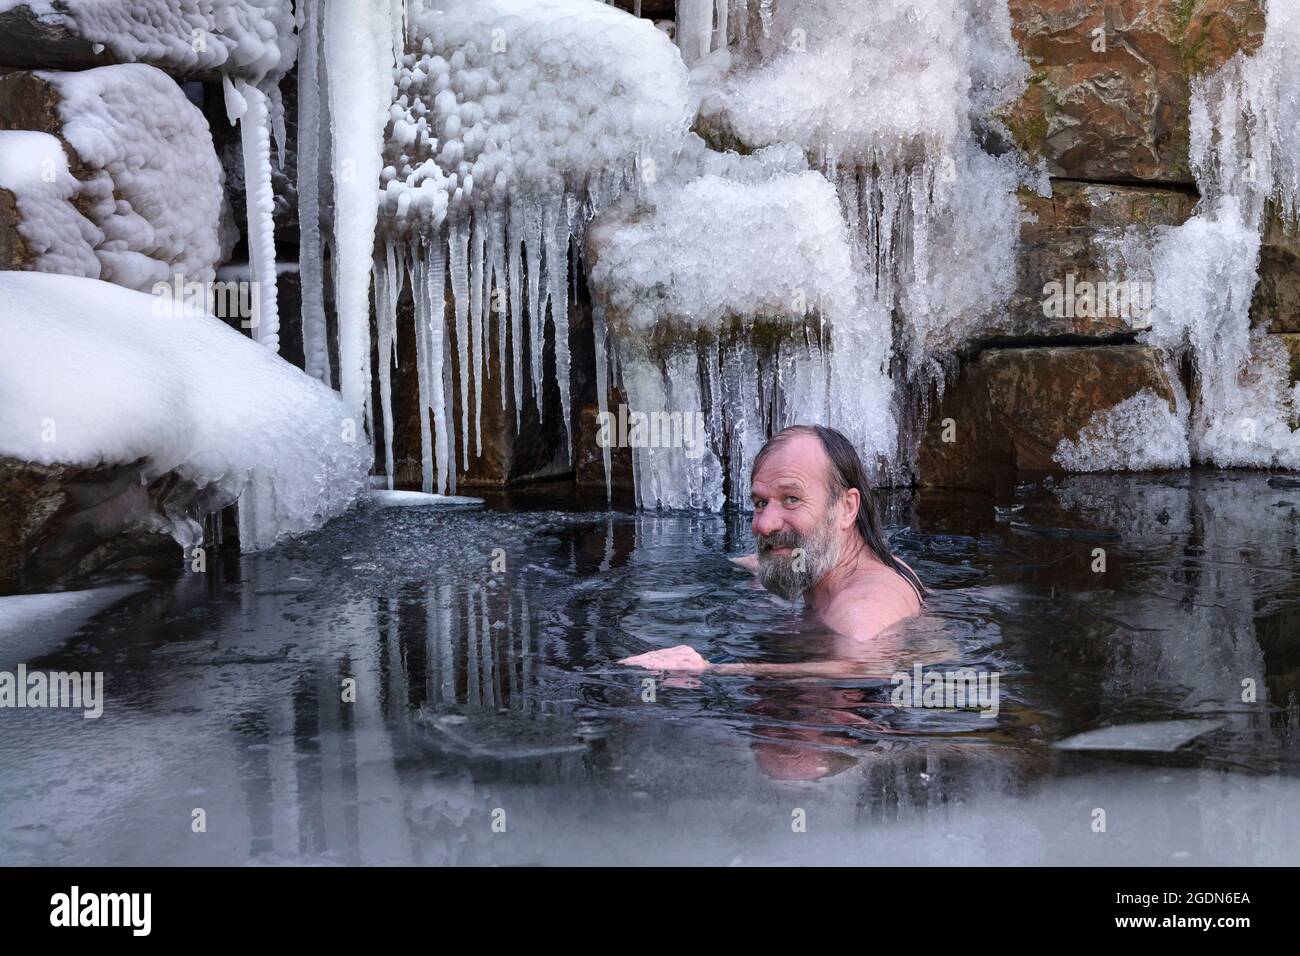 Paesi Bassi, Stroe. Il WIM Hof, l'uomo d'acqua, prende un bagno di ghiaccio nel suo centro di istruzione. WIM è noto per il metodo Wim Hof, un me semplice, ma potente Foto Stock